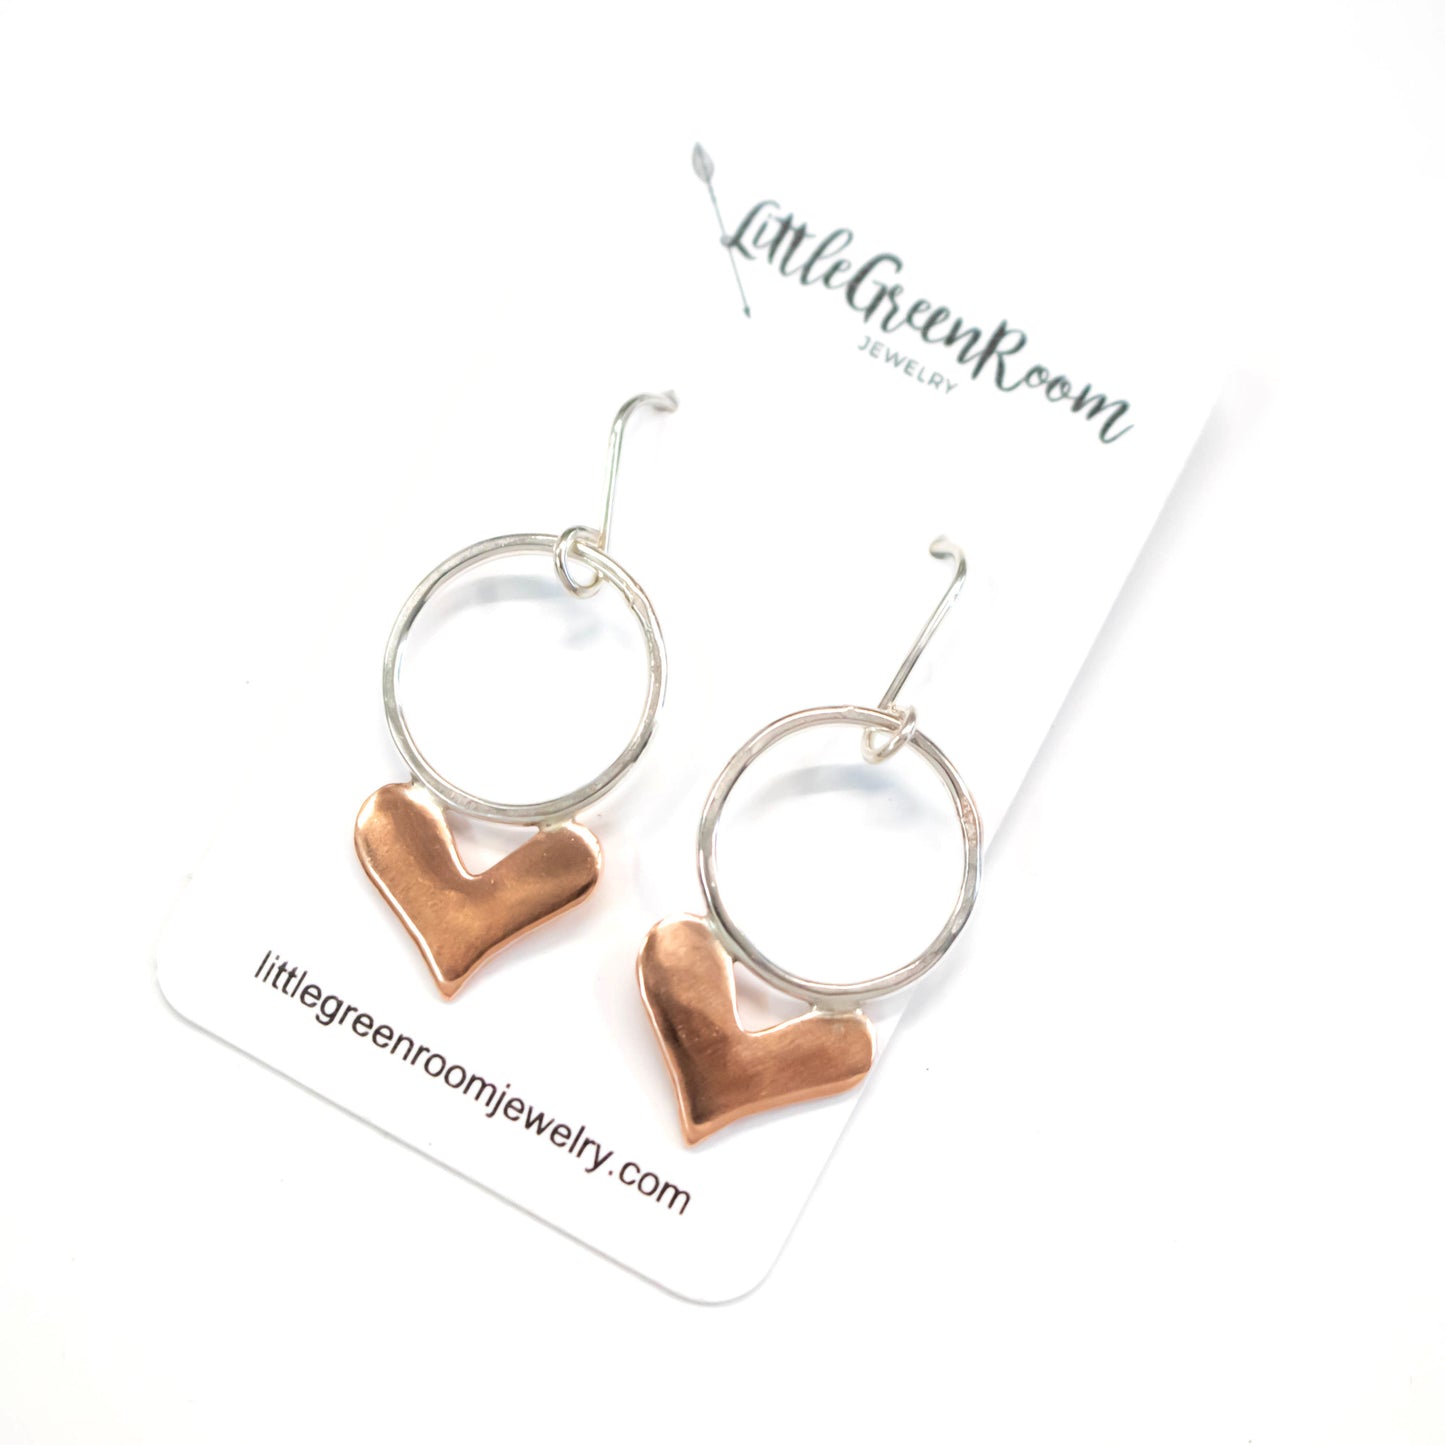 Copper Heart Hoop Earrings-Womens-LittleGreenRoomJewelry-LittleGreenRoomJewelry